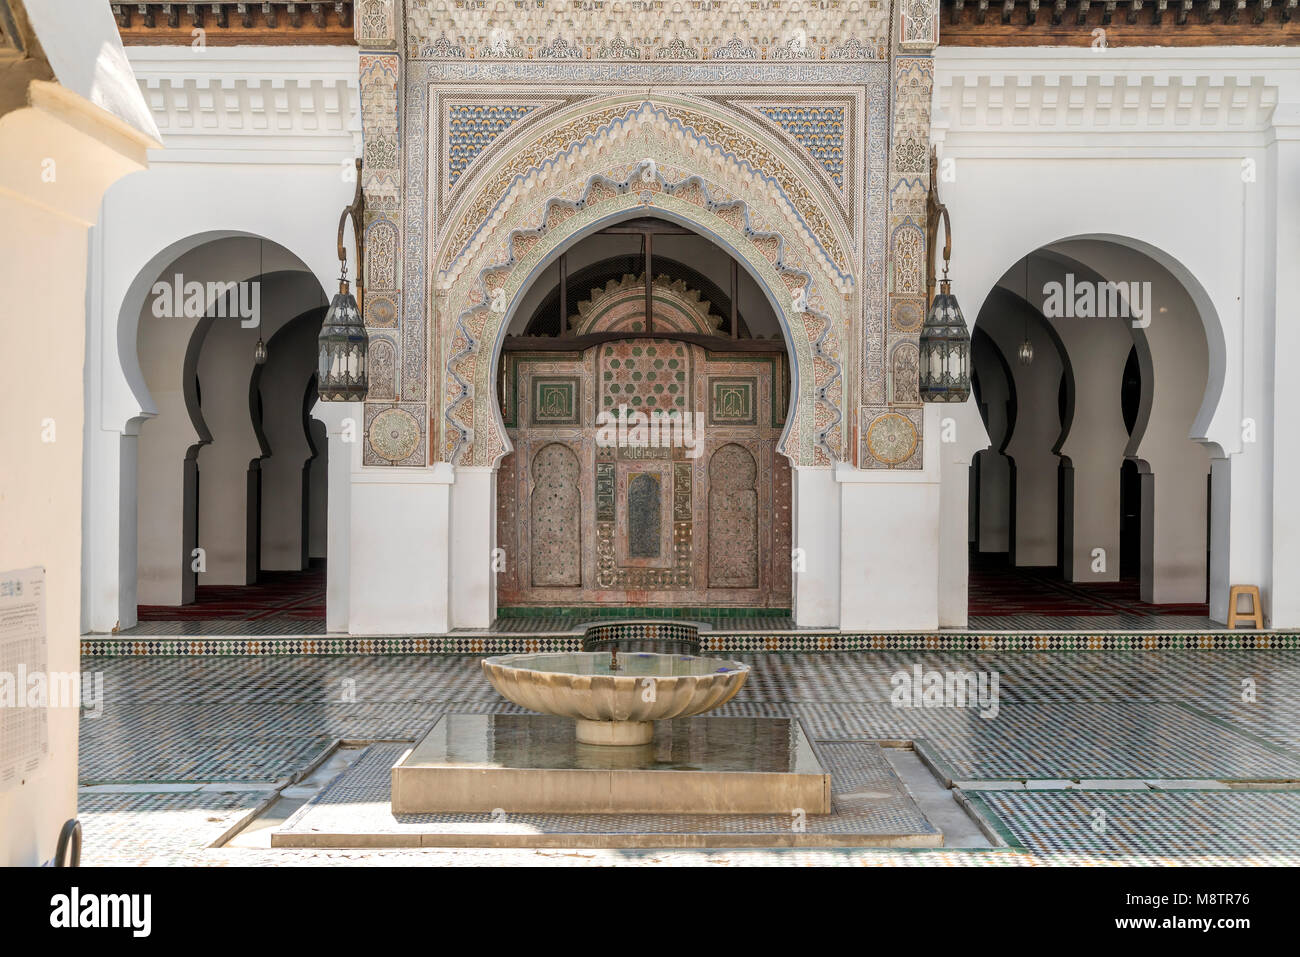 Innenhof der Moschee Kairaouine, Fes, Königreich Marokko, Afrika | Mosquée de Kairaouine courtyard, Fes, Royaume du Maroc, l'Afrique Banque D'Images